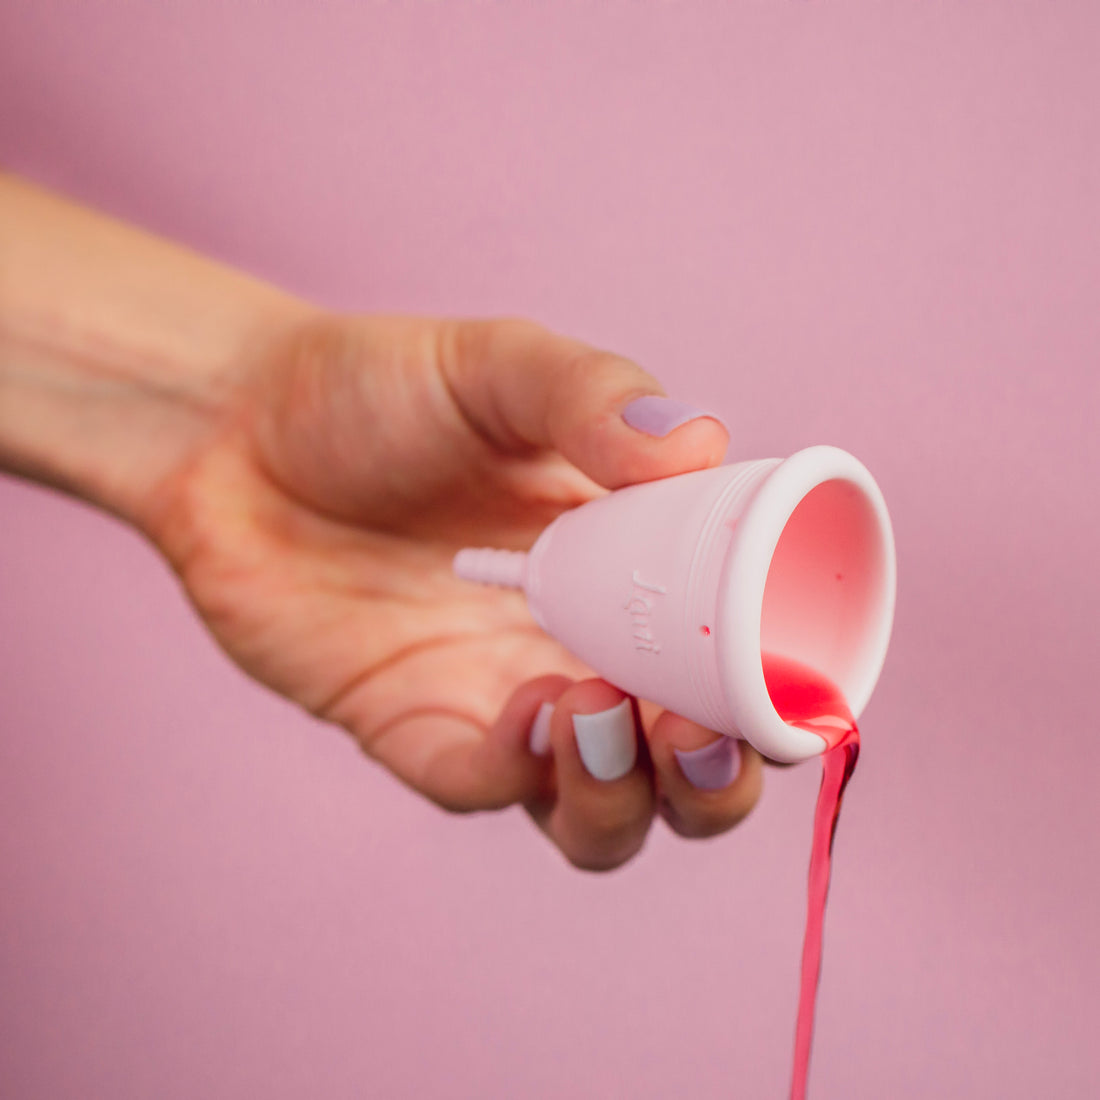 Fugas con la copa menstrual: Por qué ocurren y cómo evitarlas